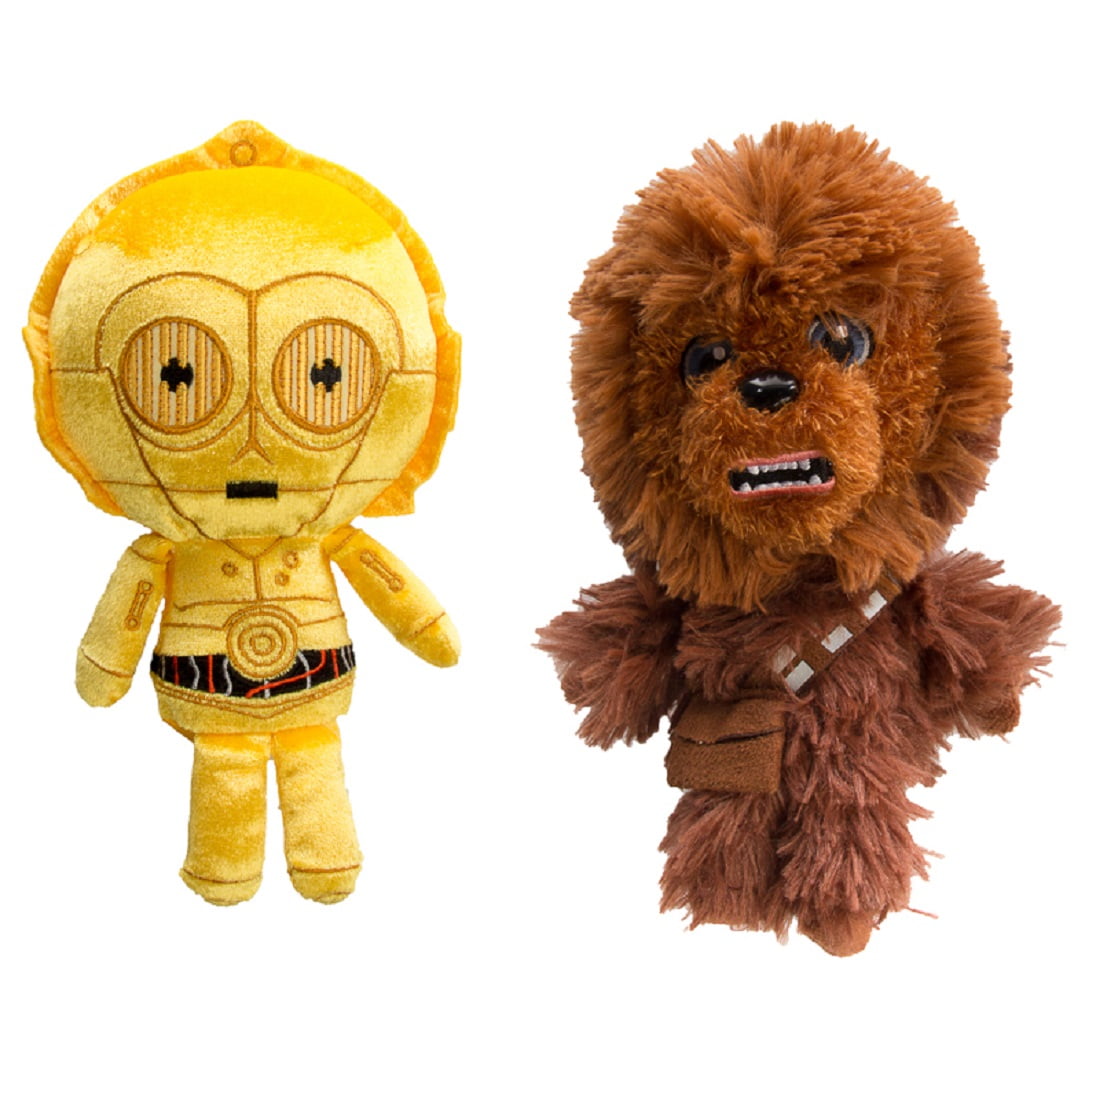 star wars stuffed animals